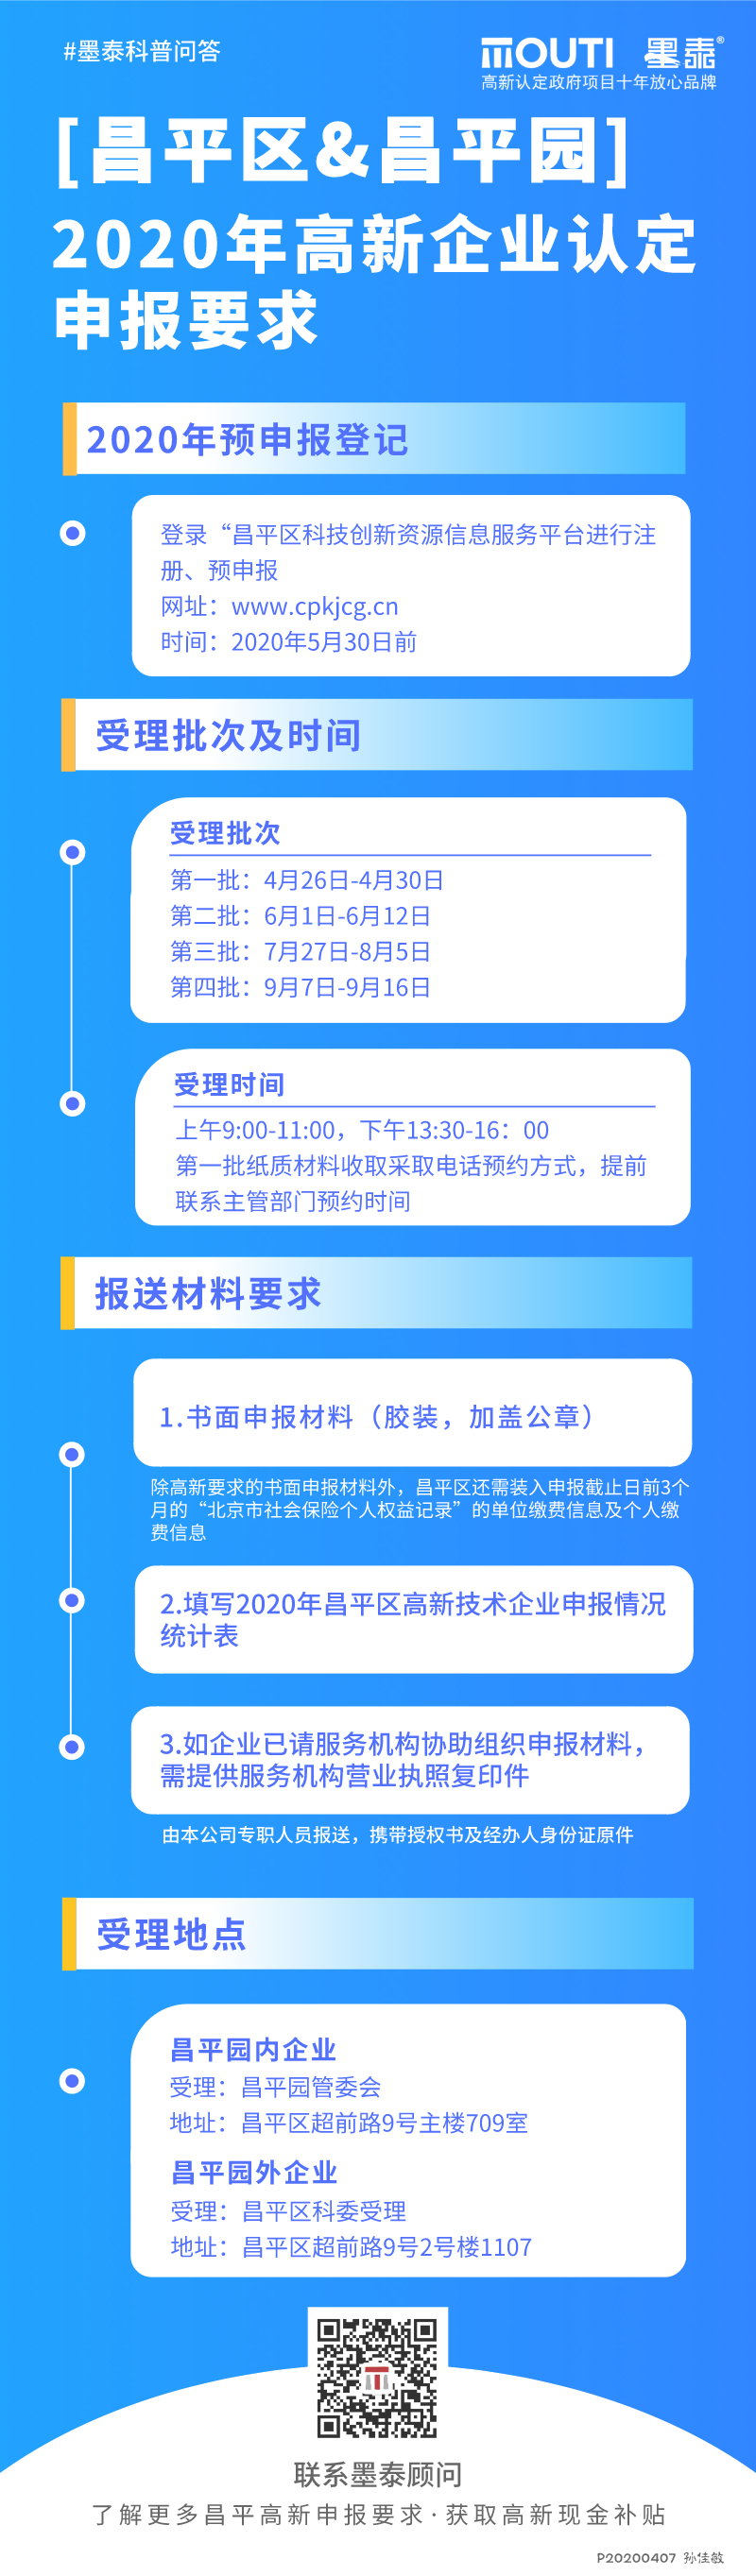 20200404 [昌平区&昌平园]2020年高新企业认定申报要求.png